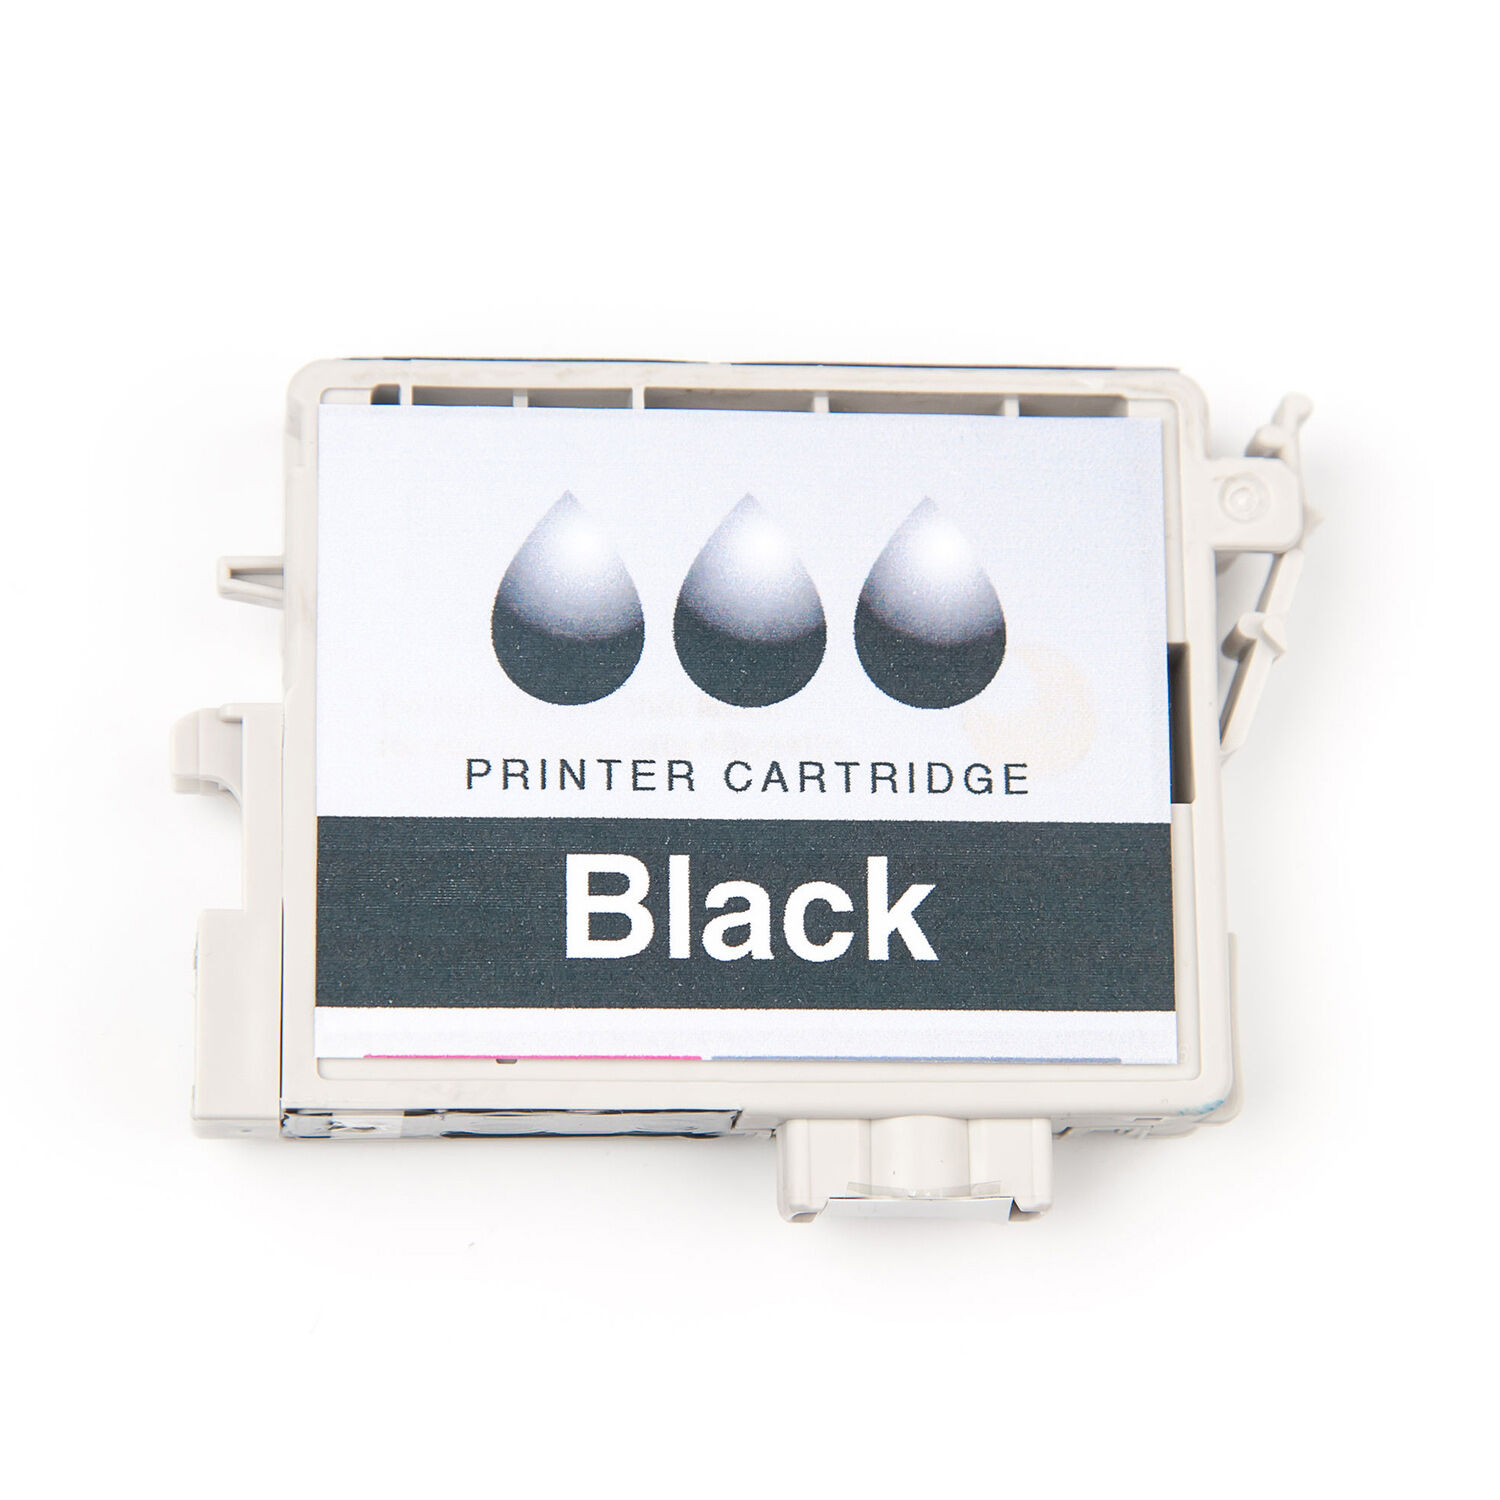 Canon Originale  Pixma TS 5350 Series Cartuccia stampante (PG-560 XLCL 561 XL / 3712 C 004) multicolor Multipack (2 pz.), Contenuto: 14,3ml + 12,2ml